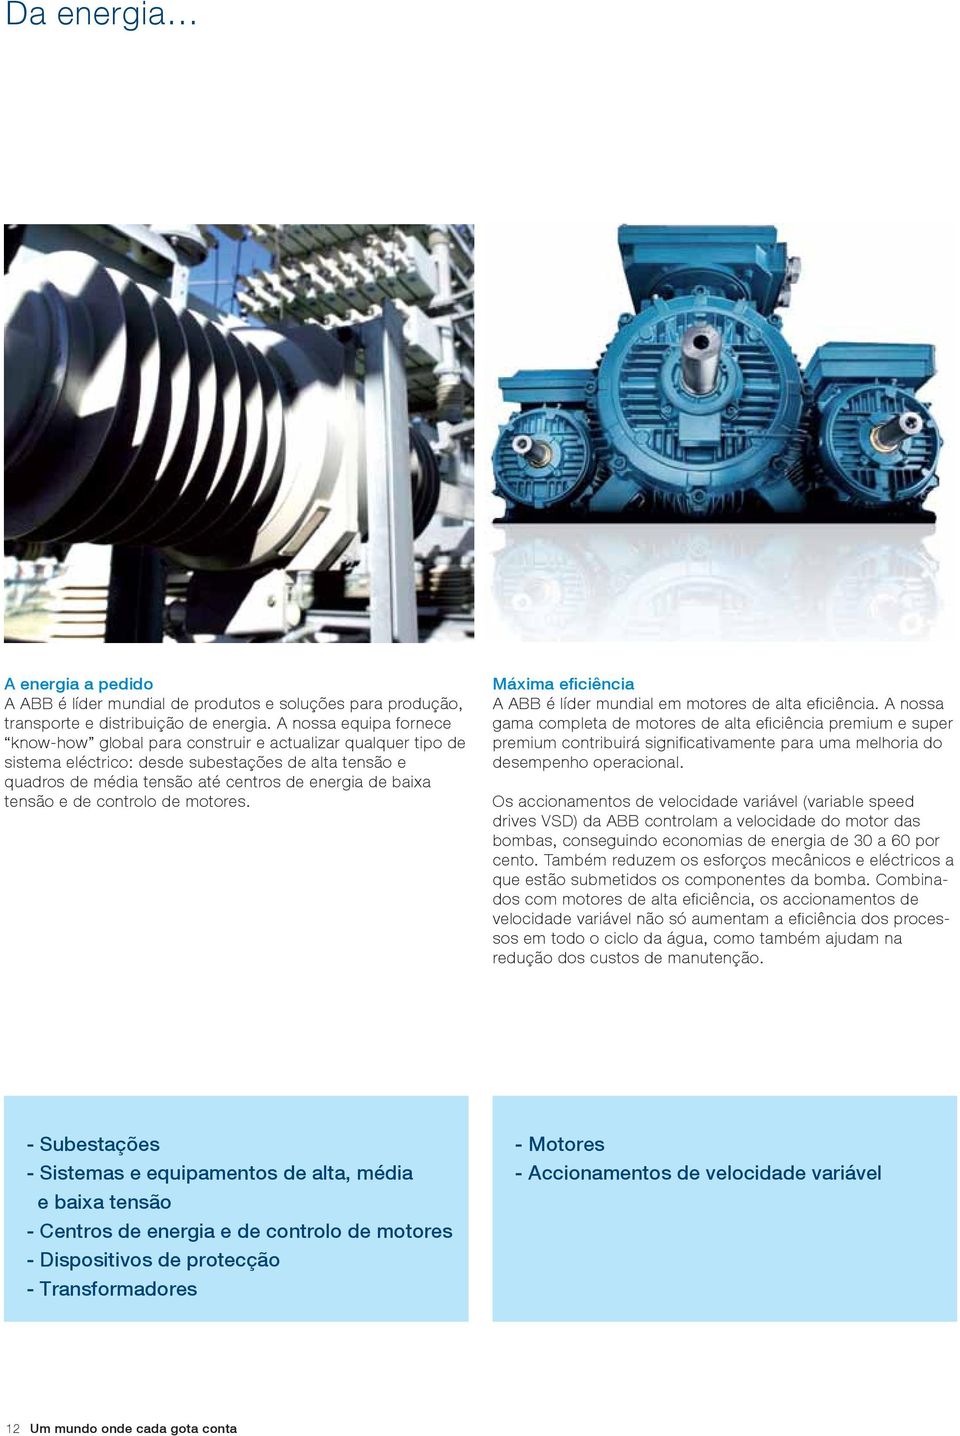 tensão e de controlo de motores. Máxima eficiência A ABB é líder mundial em motores de alta eficiência.